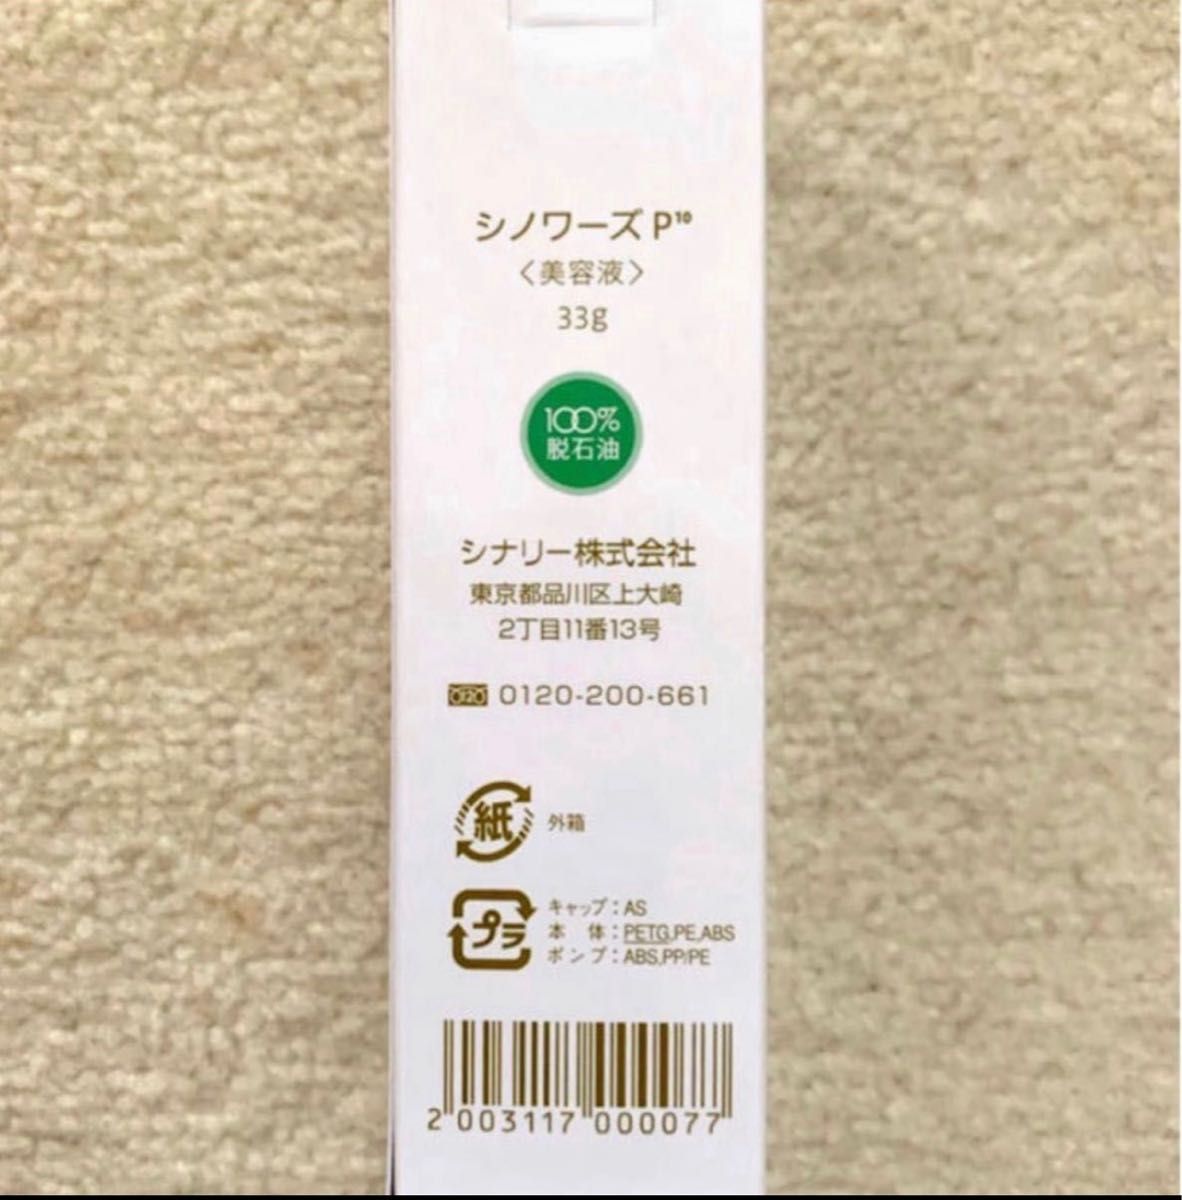 シナリー化粧品 シノワーズ P10 33g チープ - スキンケア